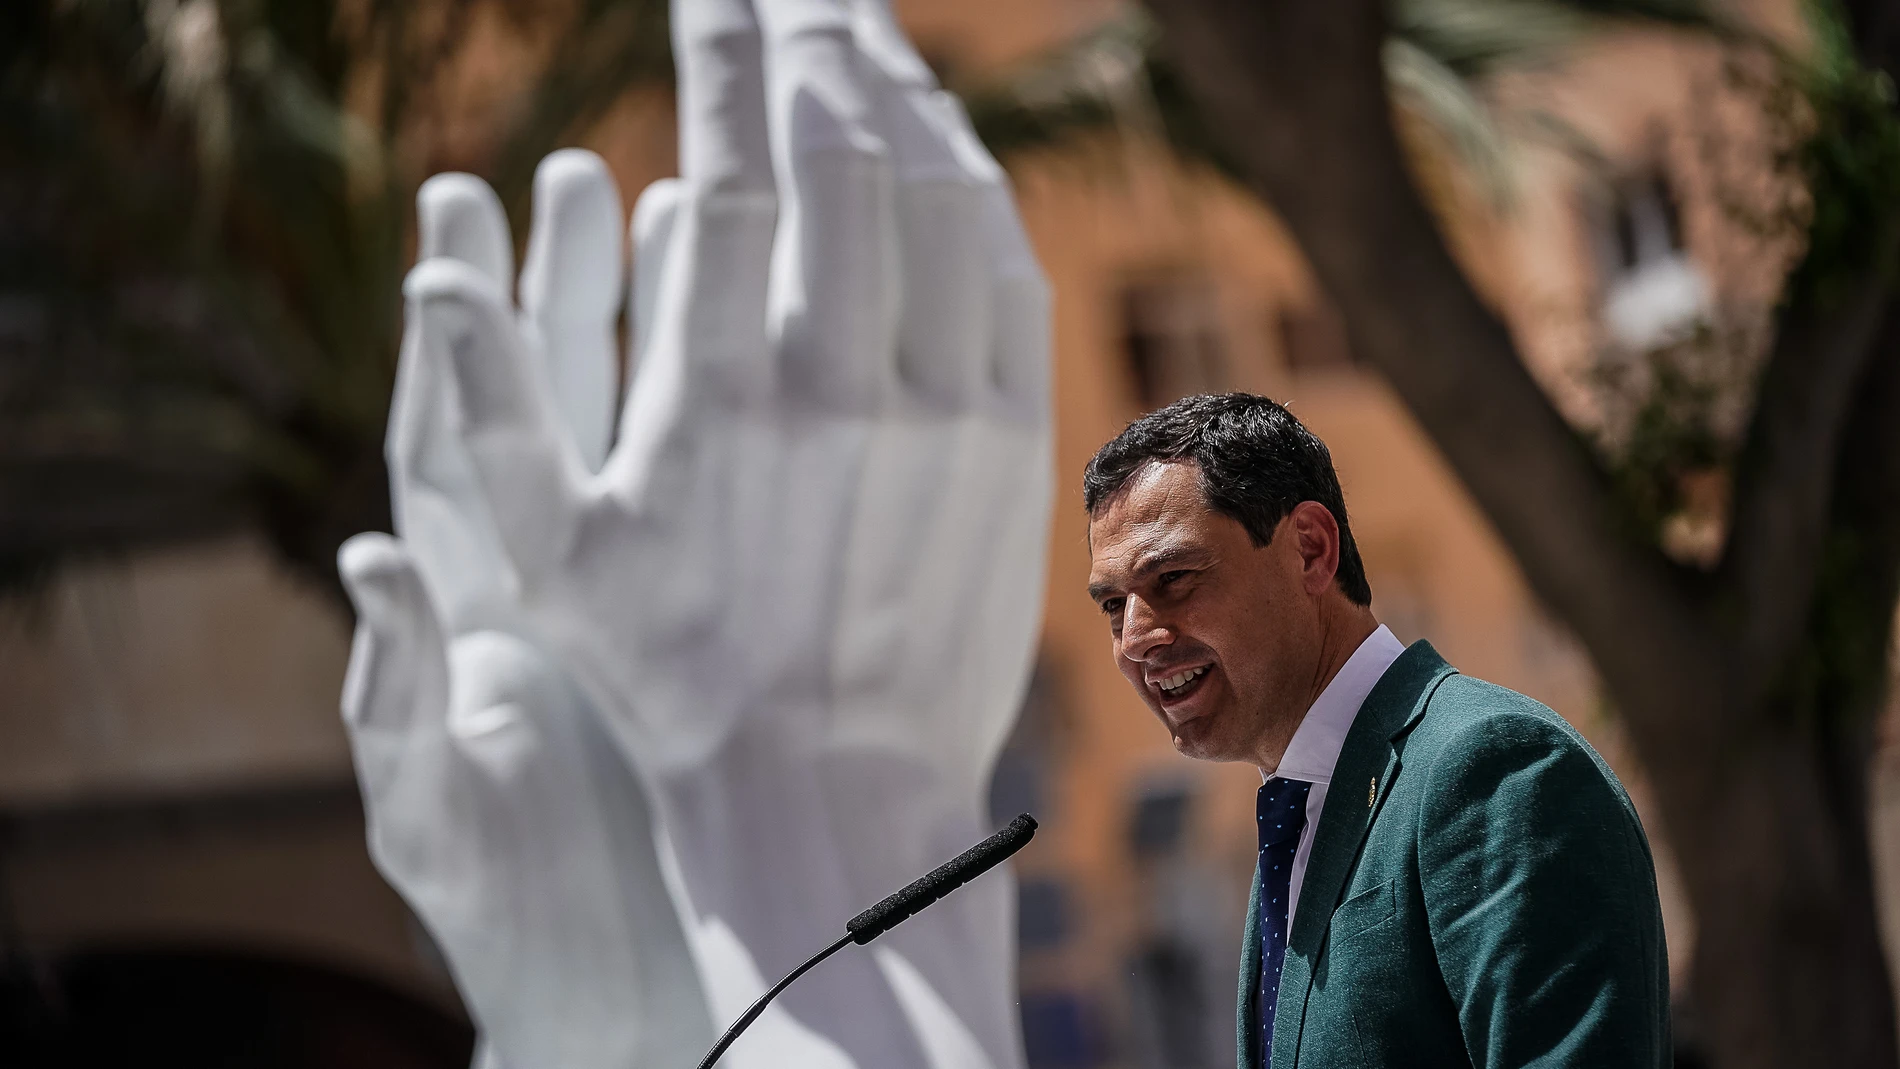 El presidente de la Junta de Andalucía, Juanma Moreno, inauguró la primera de las esculturas de homenaje que Andalucía dedica a los profesionales sanitarios y al resto de personas que luchan contra el Covid-19